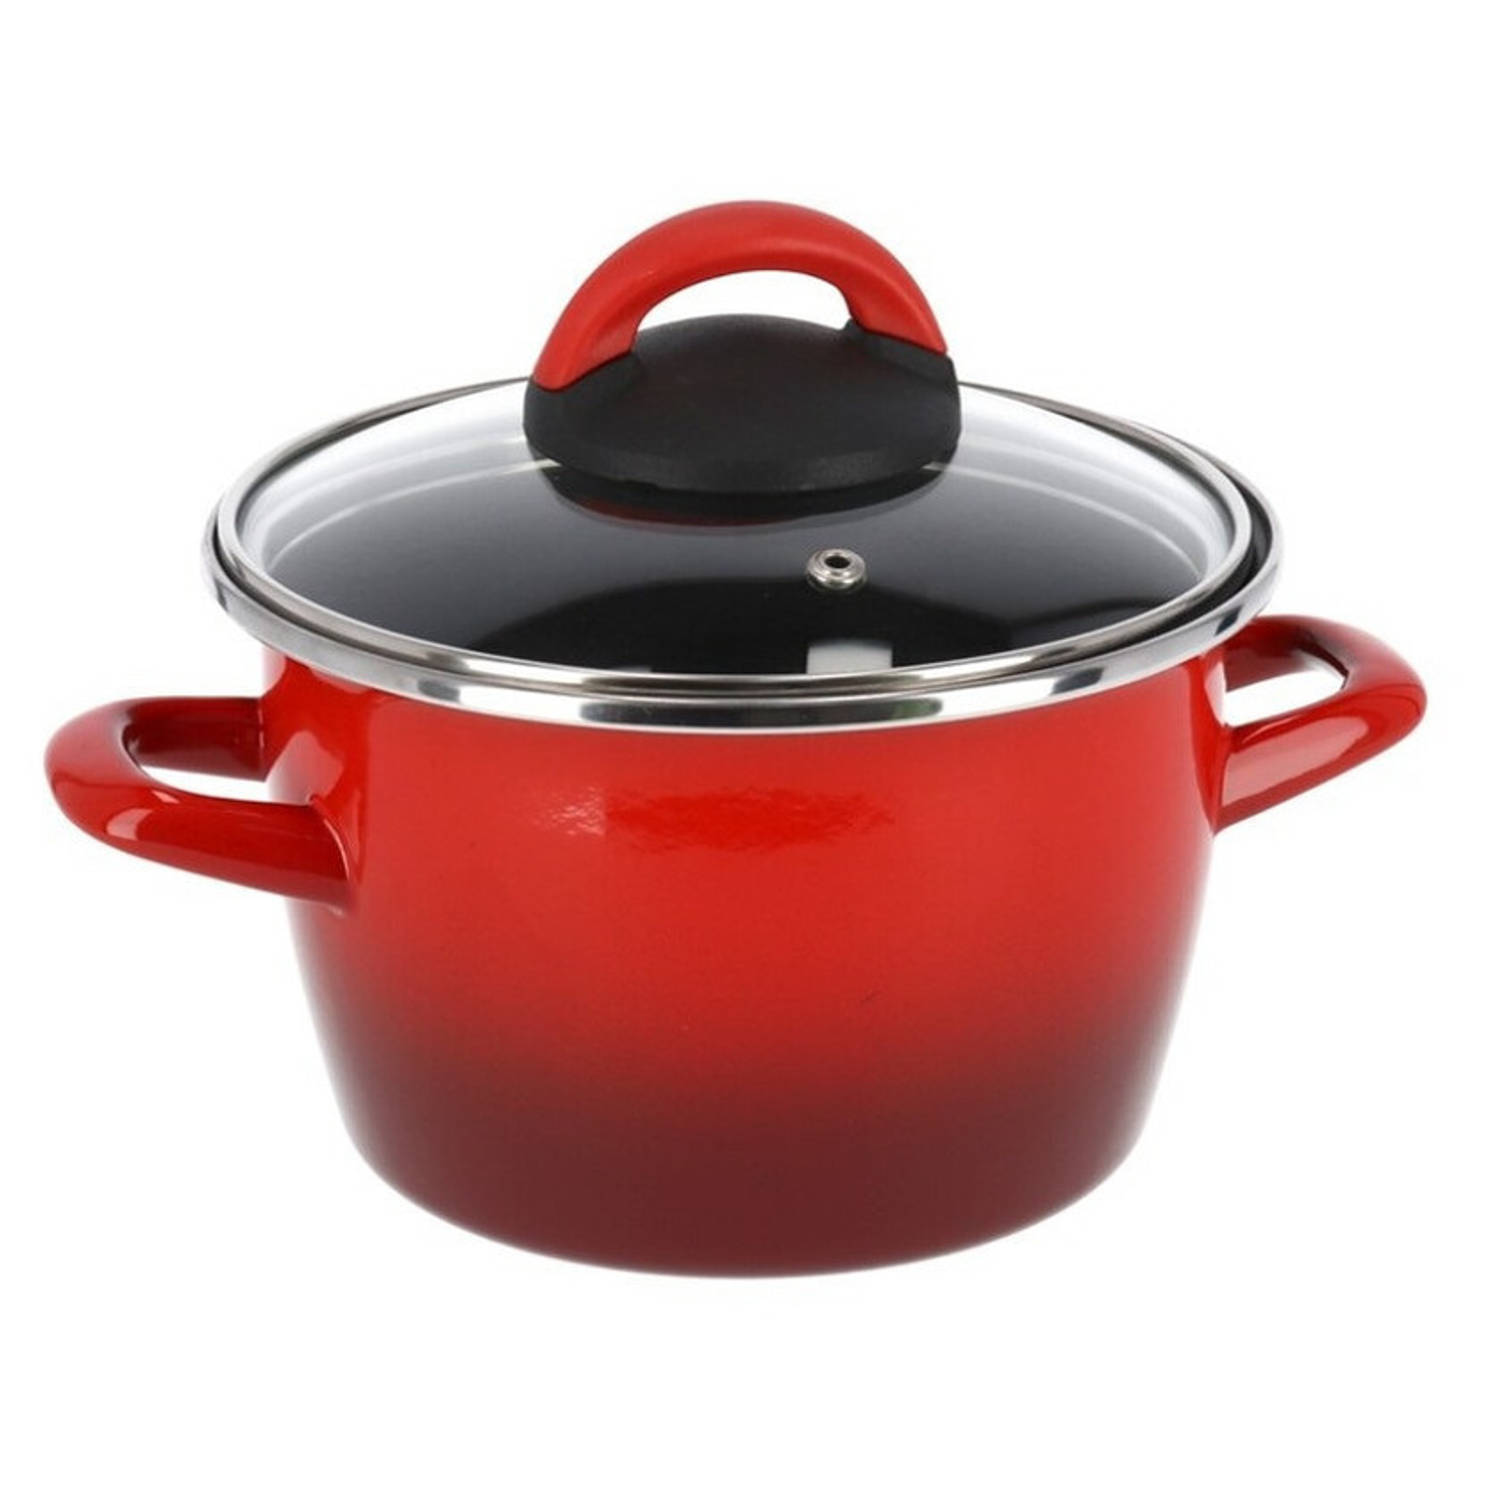 Drama Marxisme verkeer Rvs rode kookpan/pan met glazen deksel 20 cm 6 liter - Kookpannen | Blokker